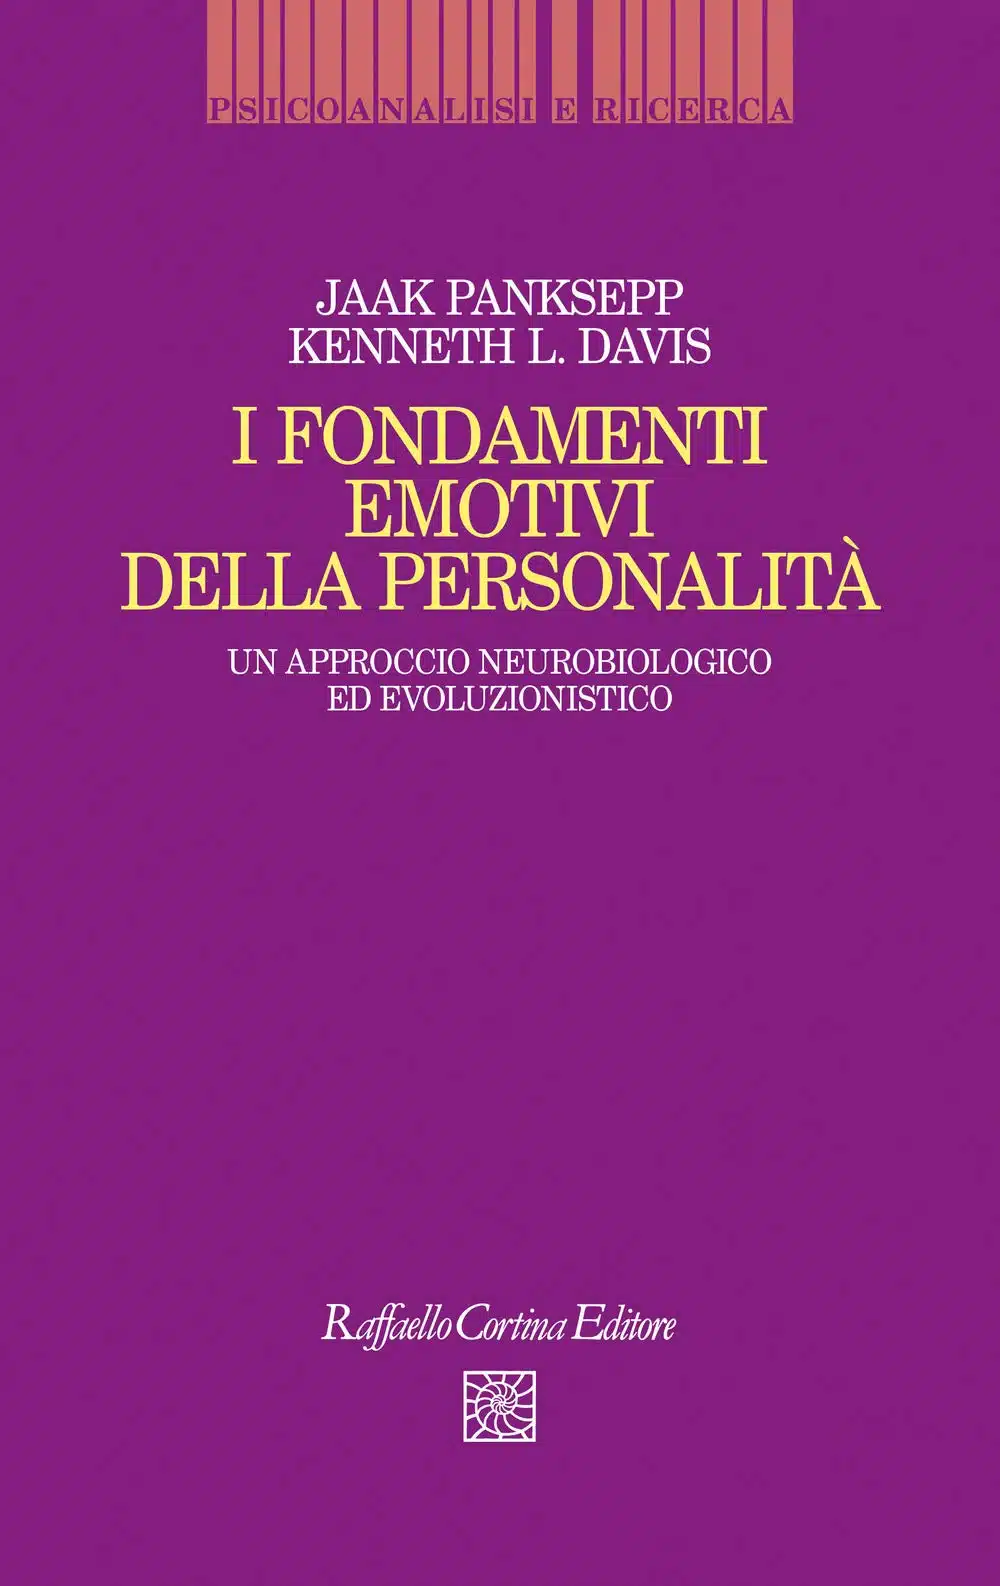 I fondamenti emotivi della personalita 2020 Recensione del libro EVIDENZA